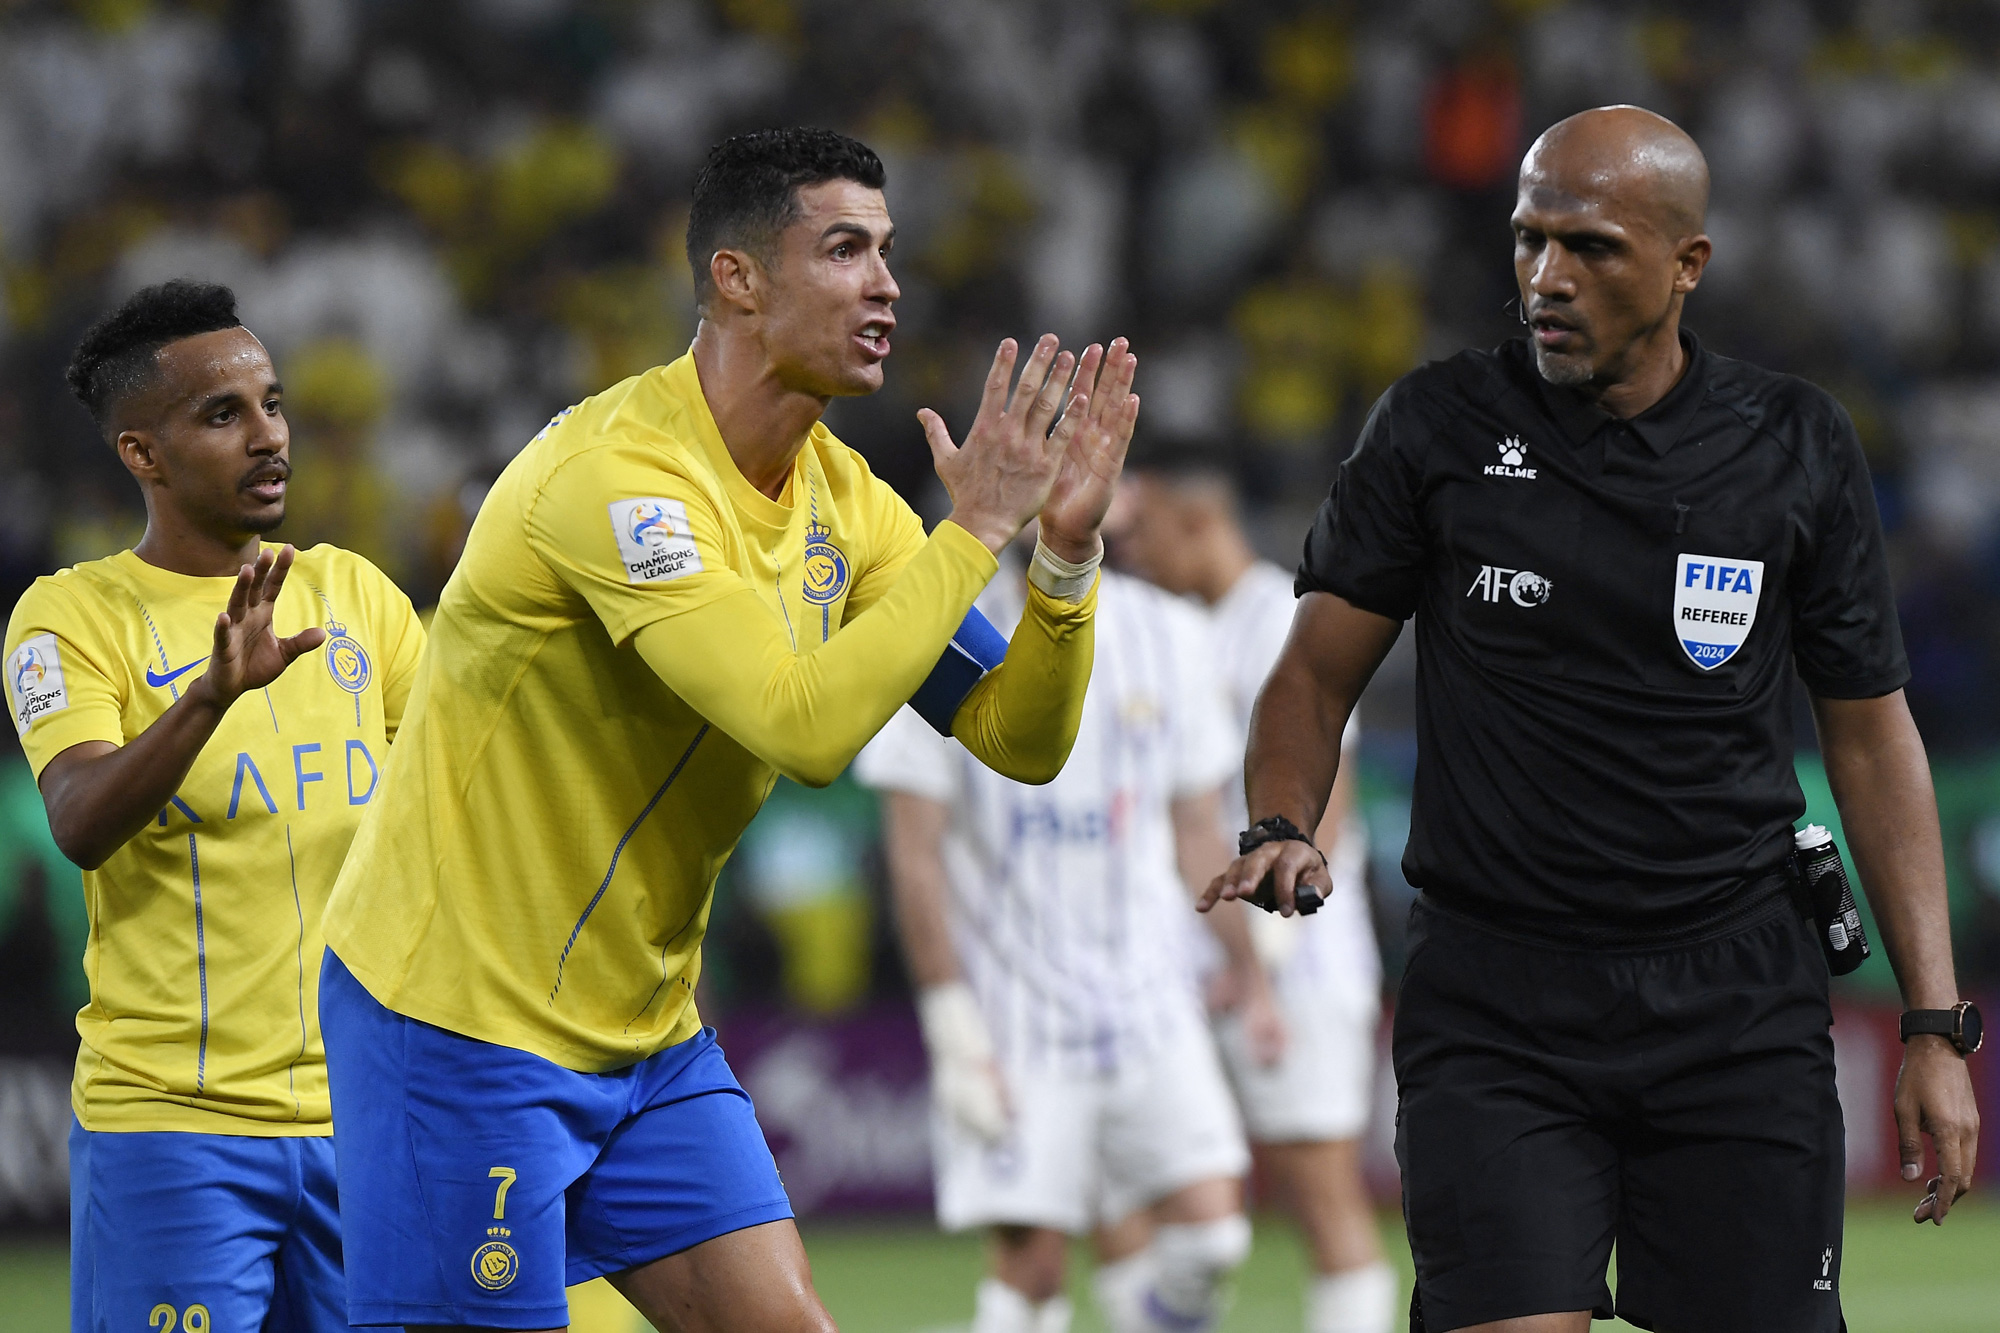 Ronaldo tranh cãi trọng tài khi thất bại ở AFC Champions League